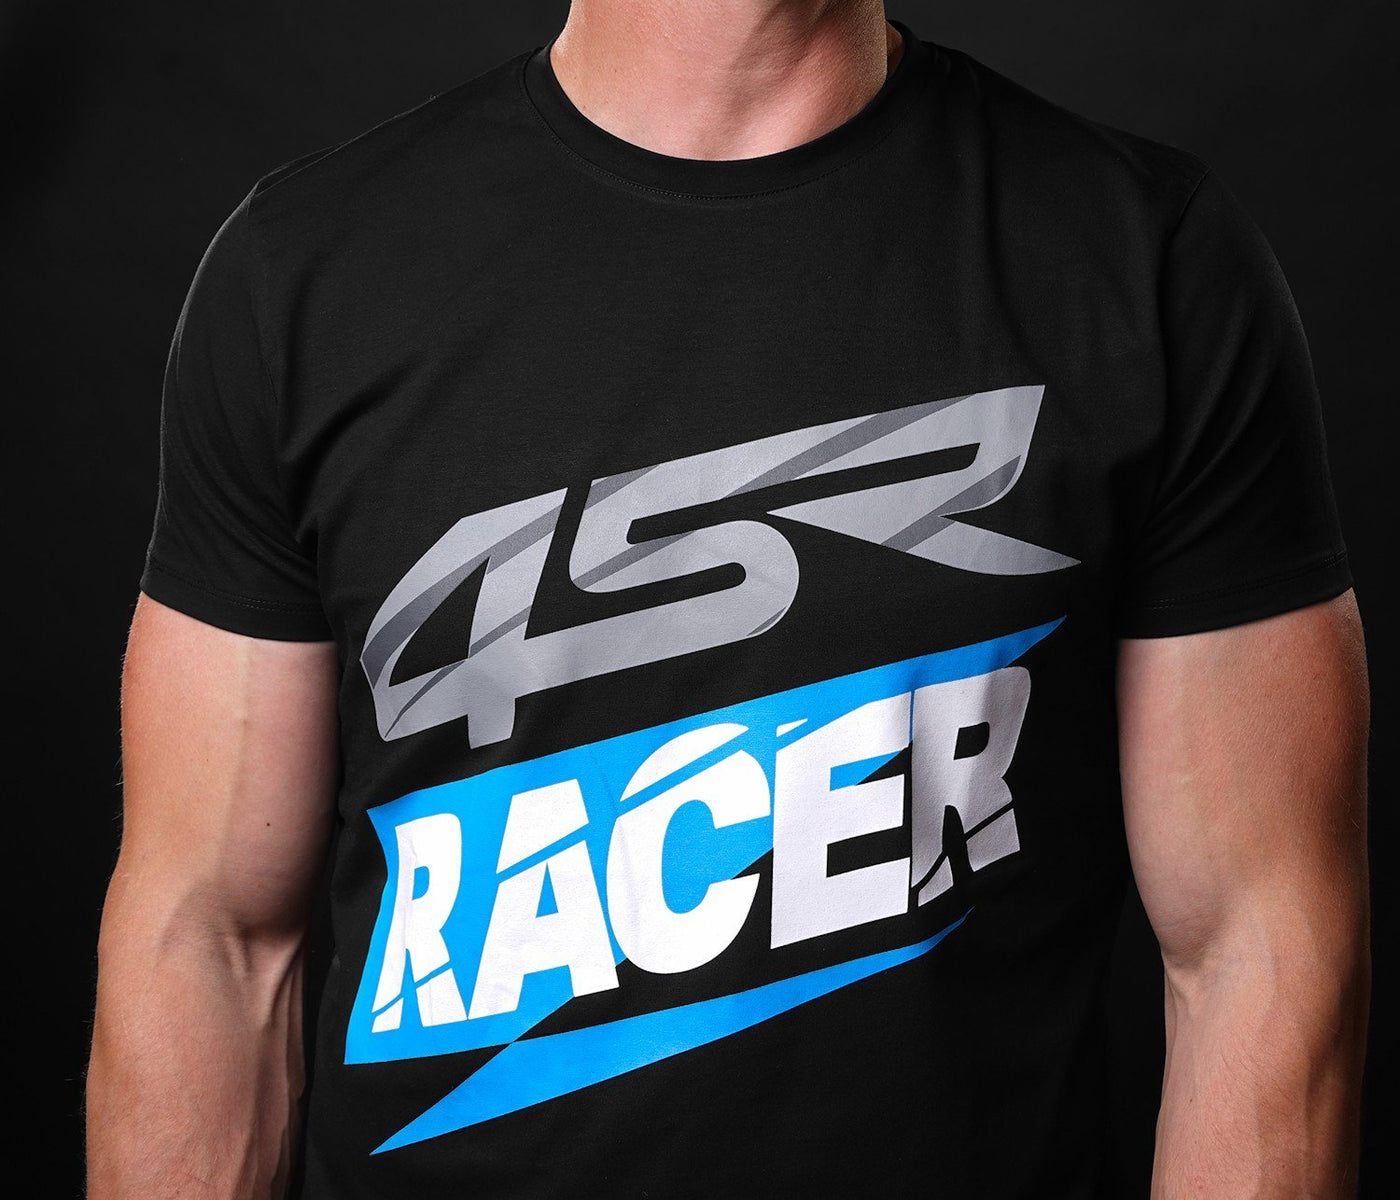 T-Shirt Racer Black